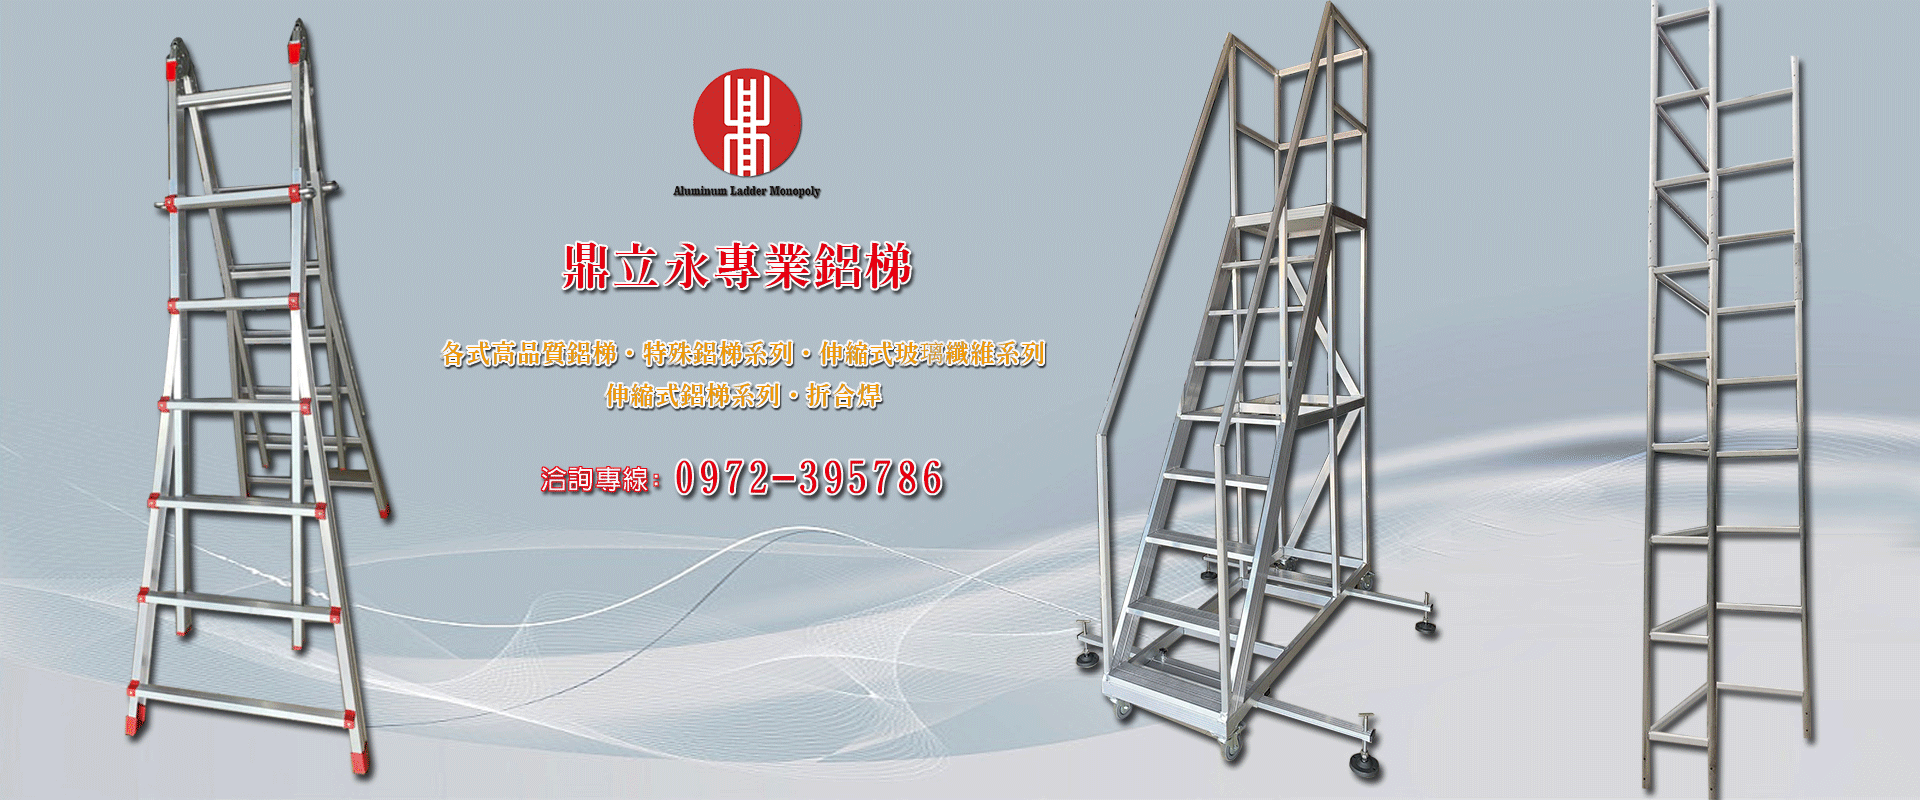 鼎立永鋁梯專賣- 鐵製豪華梯,各式鋁梯,各式焊接鋁梯,各式玻璃纖維梯